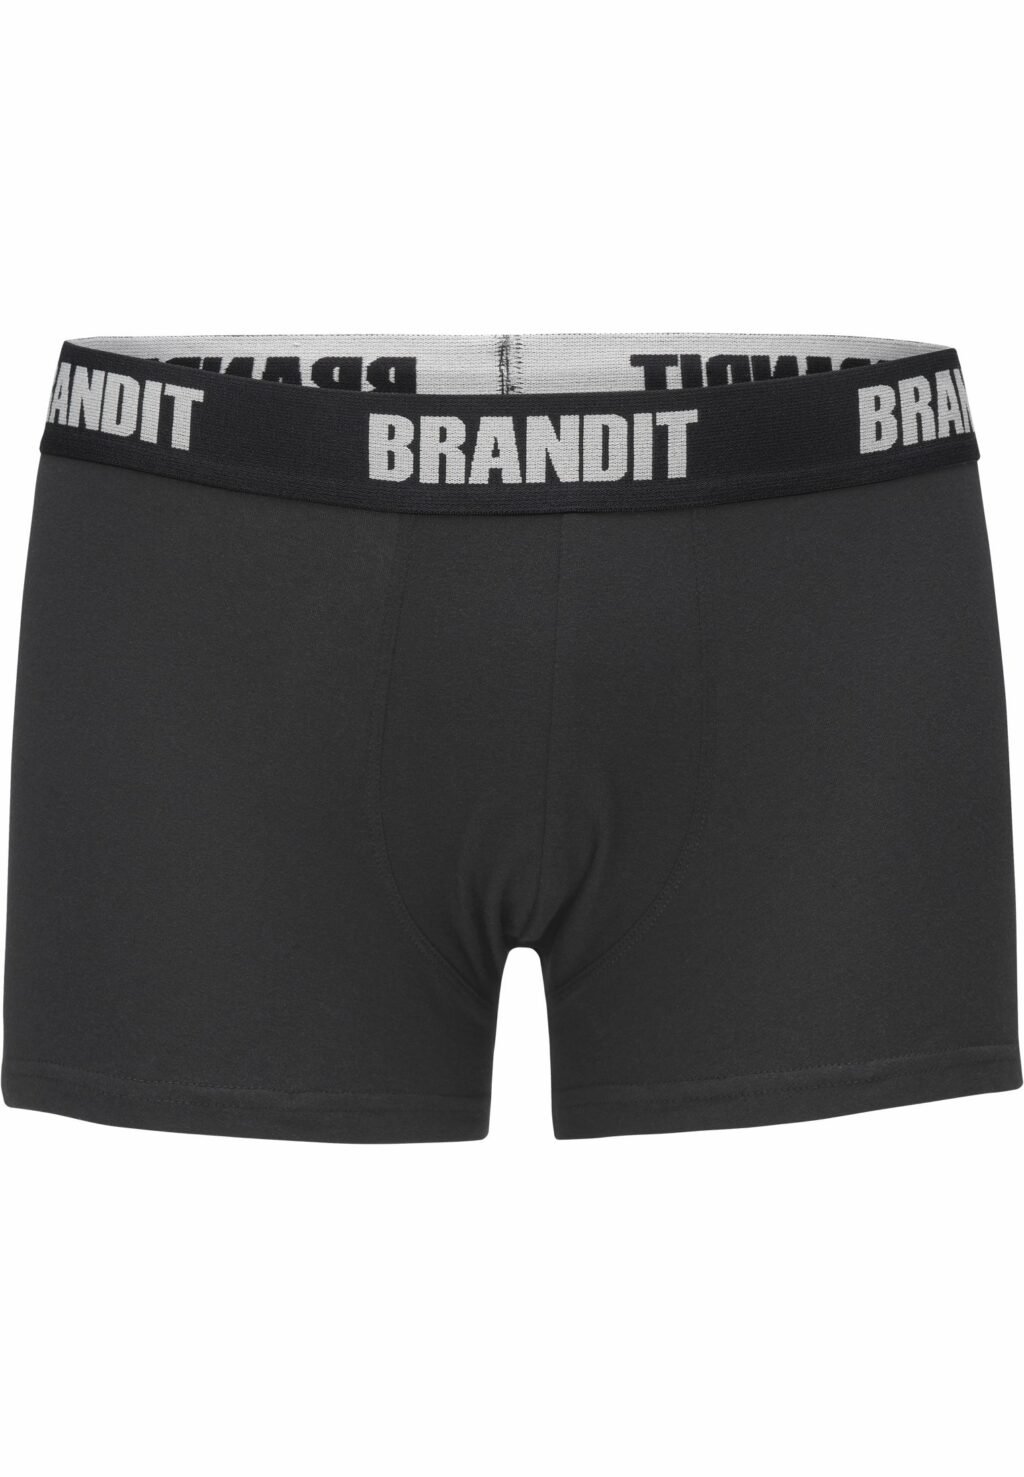 Brandit Boxershorts Logo 2-Pack black/black BD4501